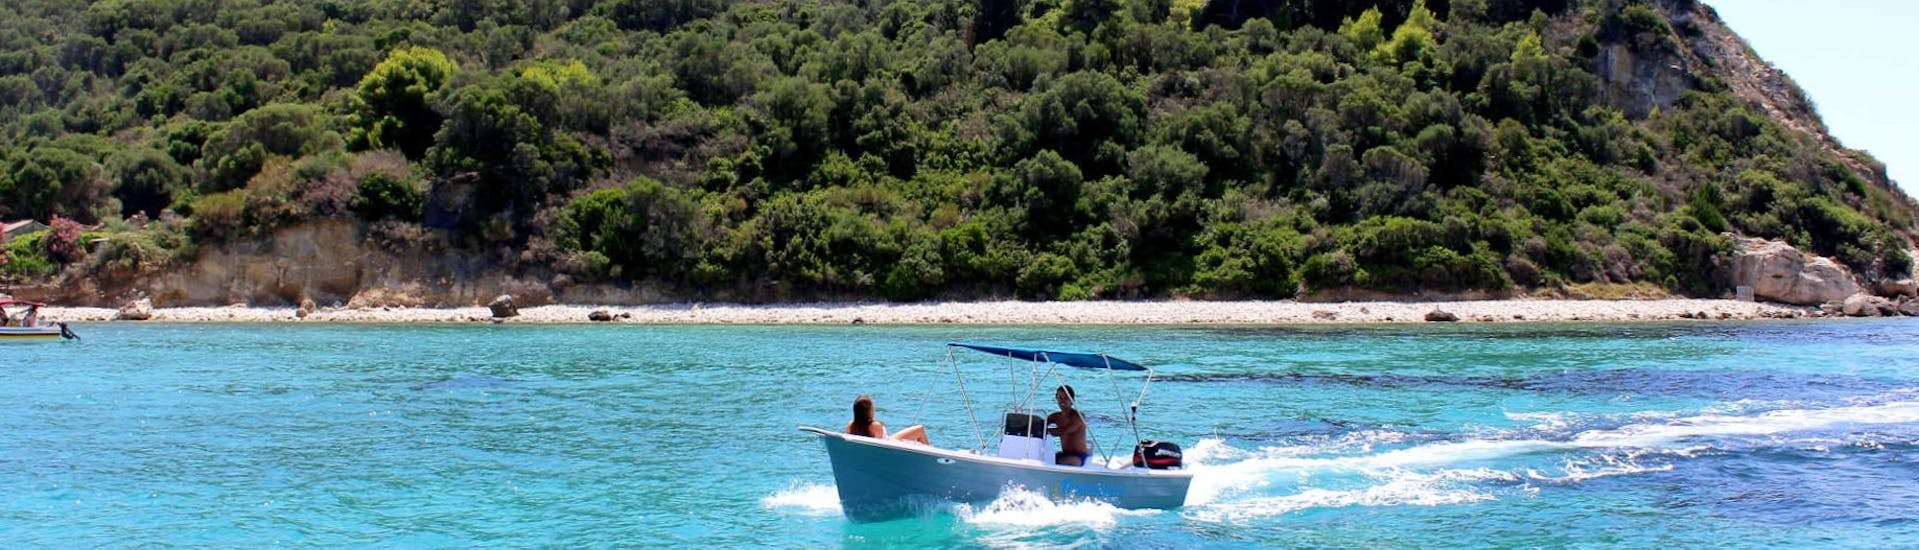 La barca che potrete noleggiare presso il noleggio barche ad Agios Sostis - Premium con Traventure Zakynthos che si trova sulla spiaggia.